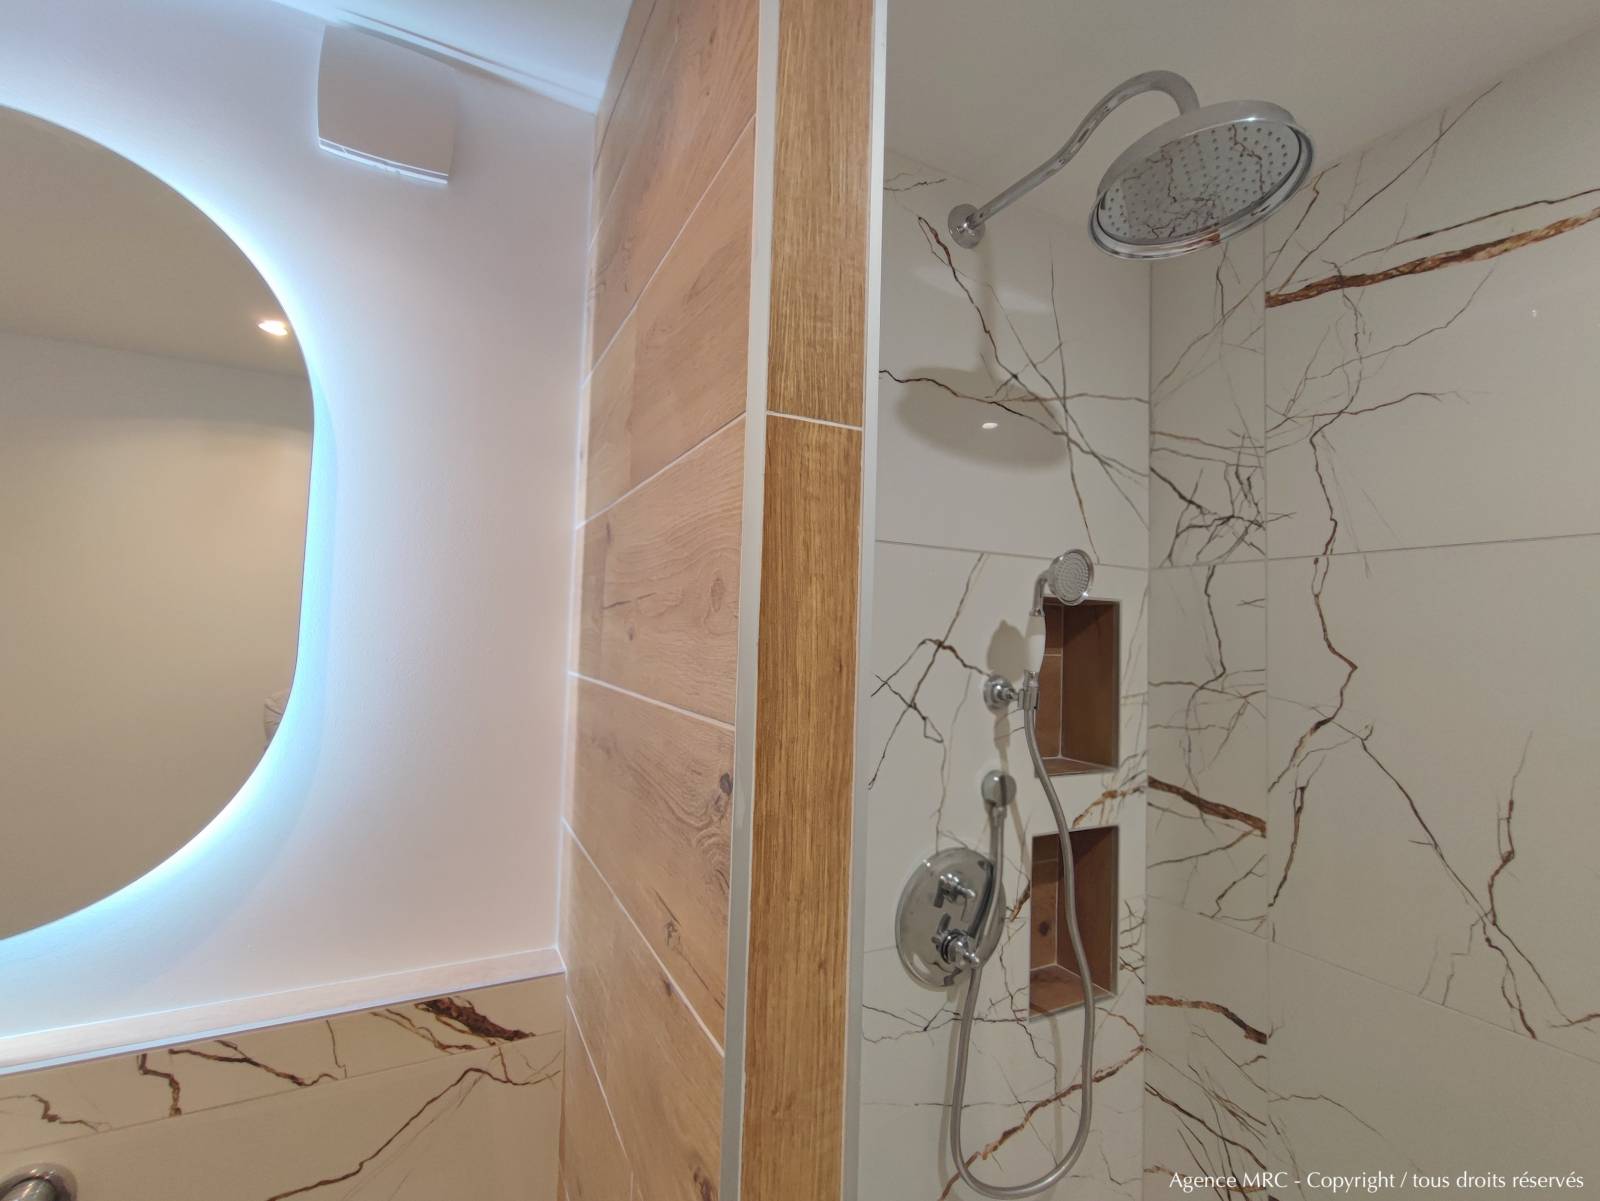 Conception pour sublime rénovation d'une salle de bain avec baignoire et douche à l'italienne à Marseille par AGENCE MRC : Architecte d'Intérieur spécialisé en salles de bain